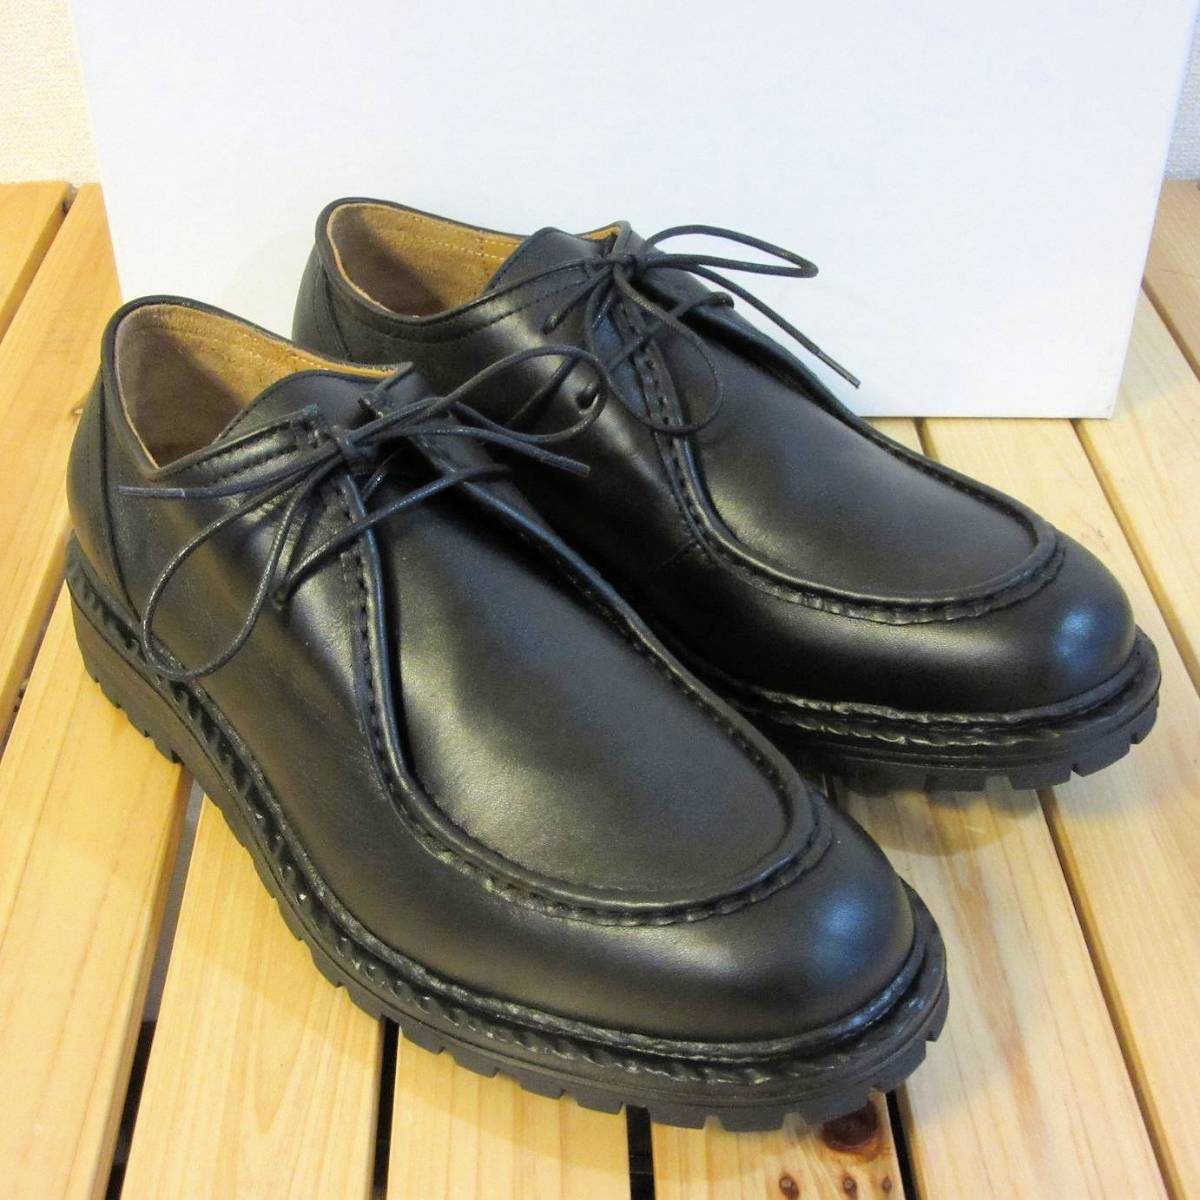 新品 未使用 BOEMOS ボエモス イタリア製 レザーシューズ Uチップ モカシン 革靴 カジュアル シューズ 黒 ブラック メンズ 43 28cm 程度 の画像2